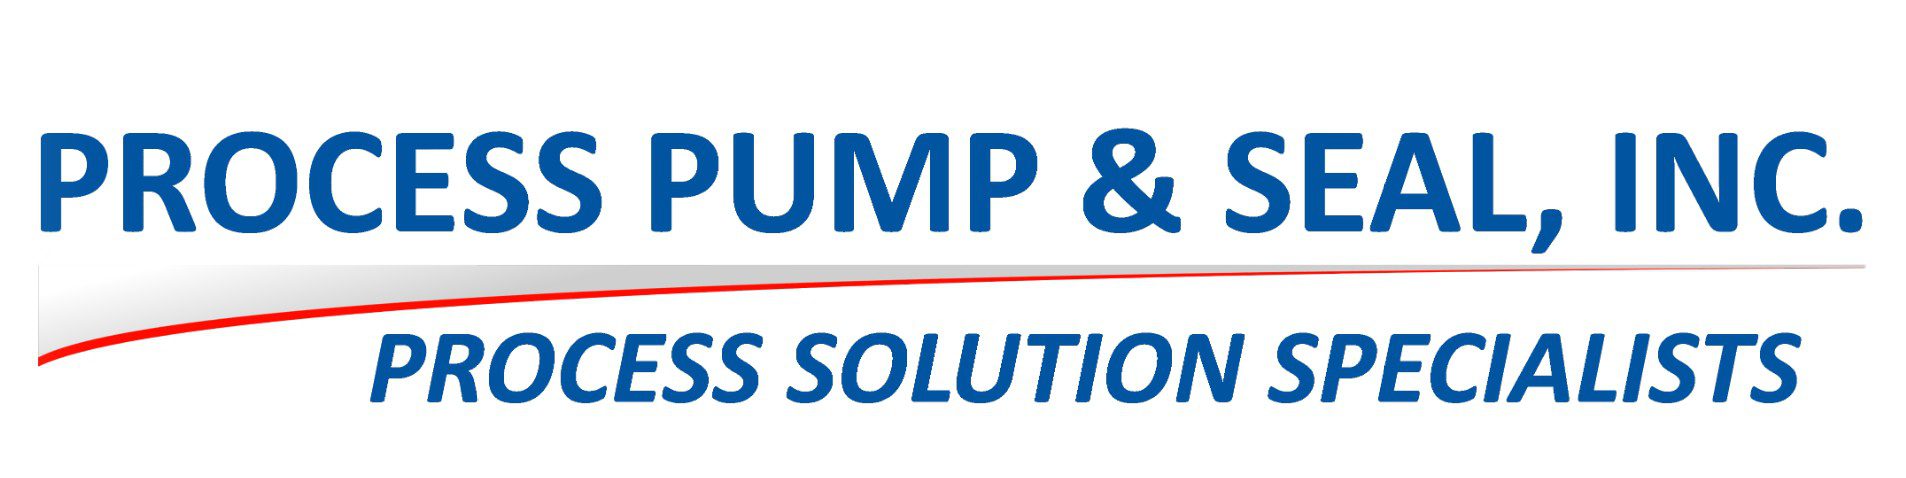 Process Pump & Seal, Inc.